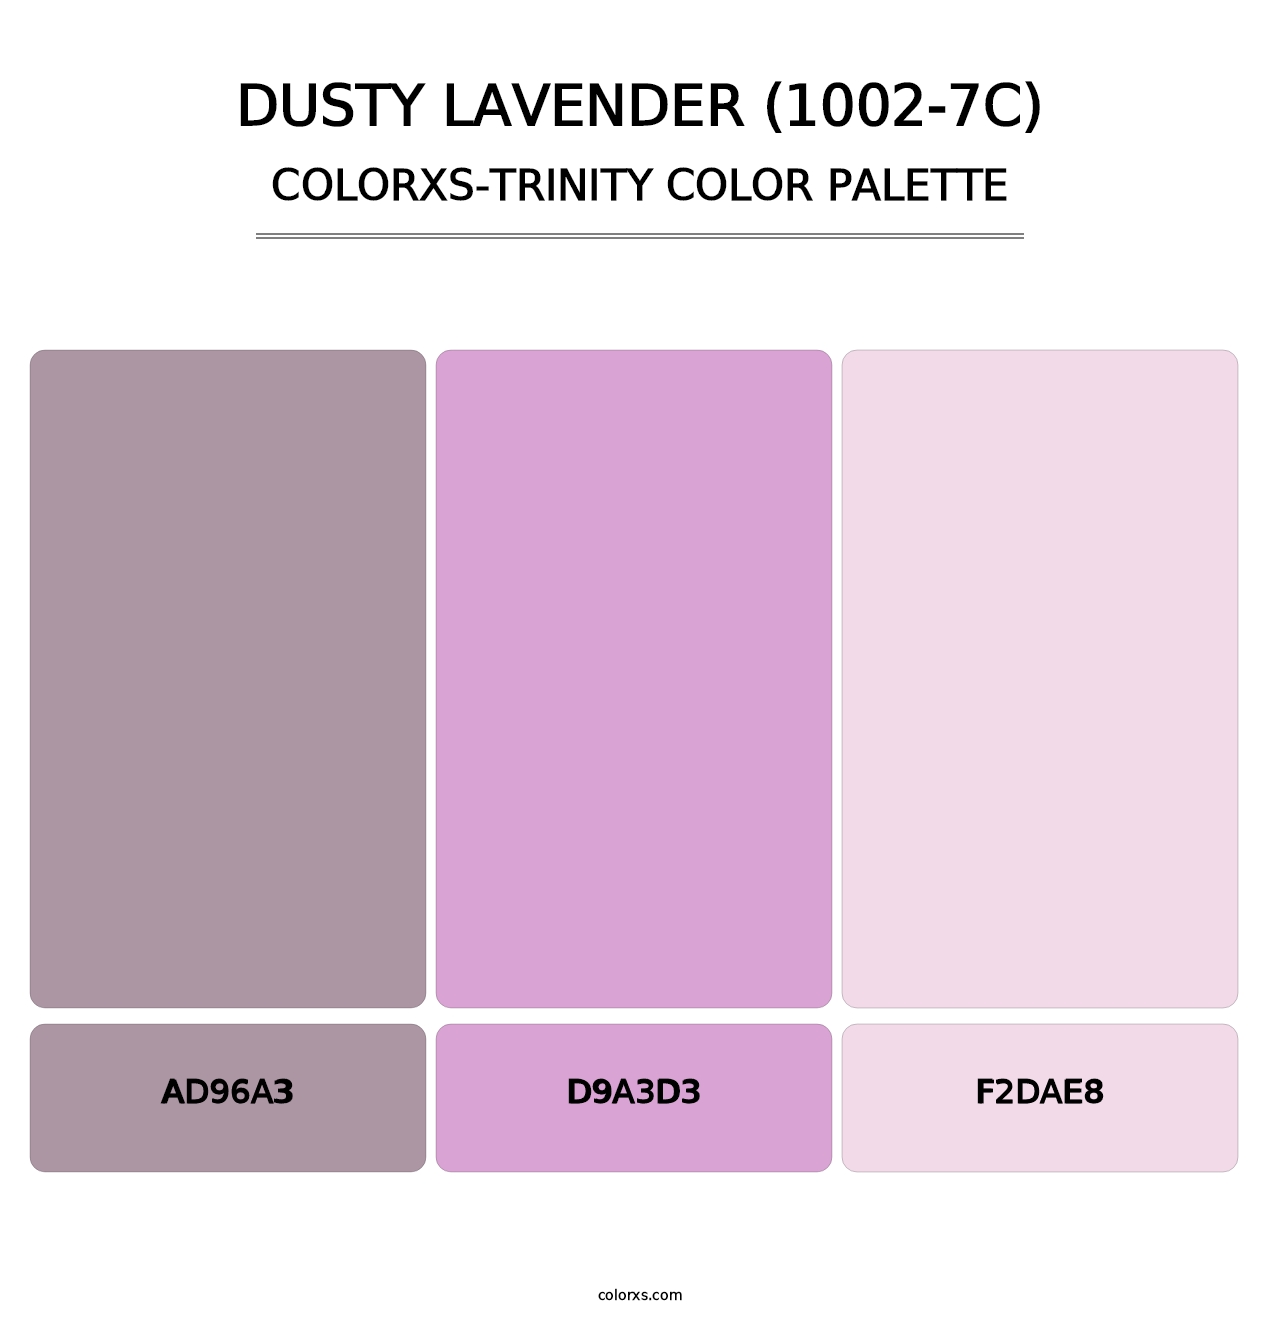 Dusty Lavender (1002-7C) - Colorxs Trinity Palette